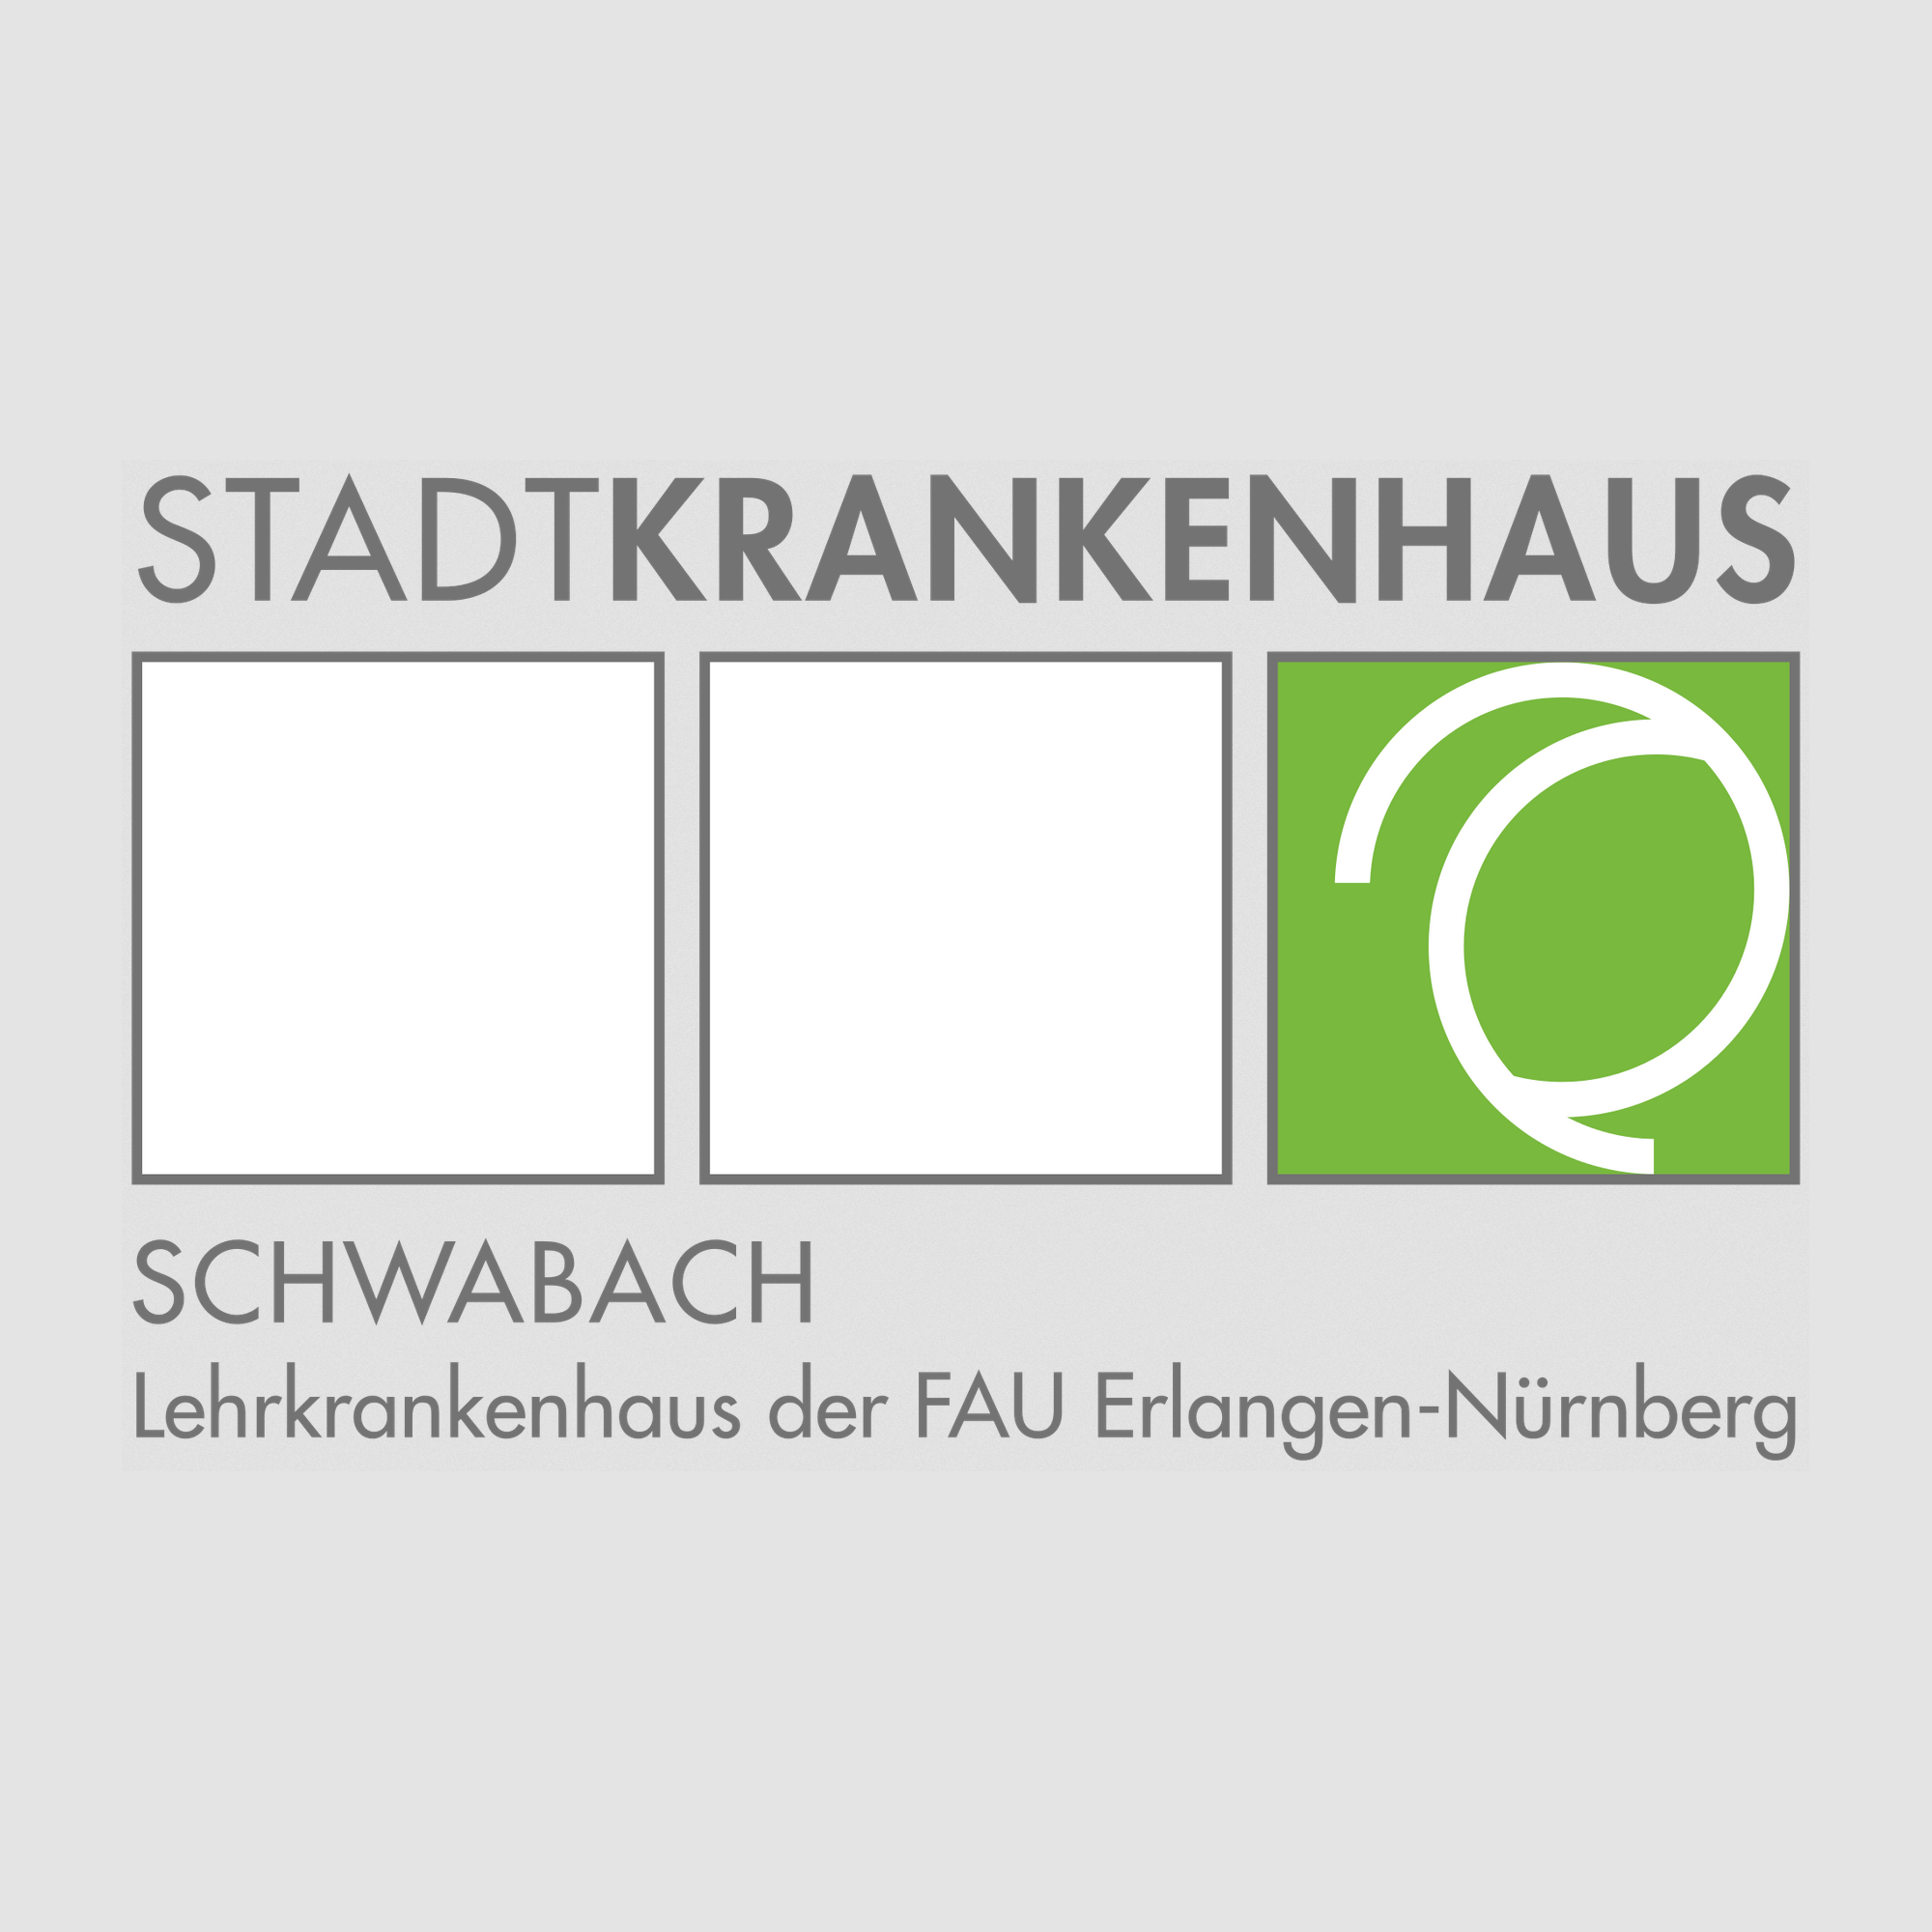 Stadtkrankenhaus Schwabach GmbH Logo